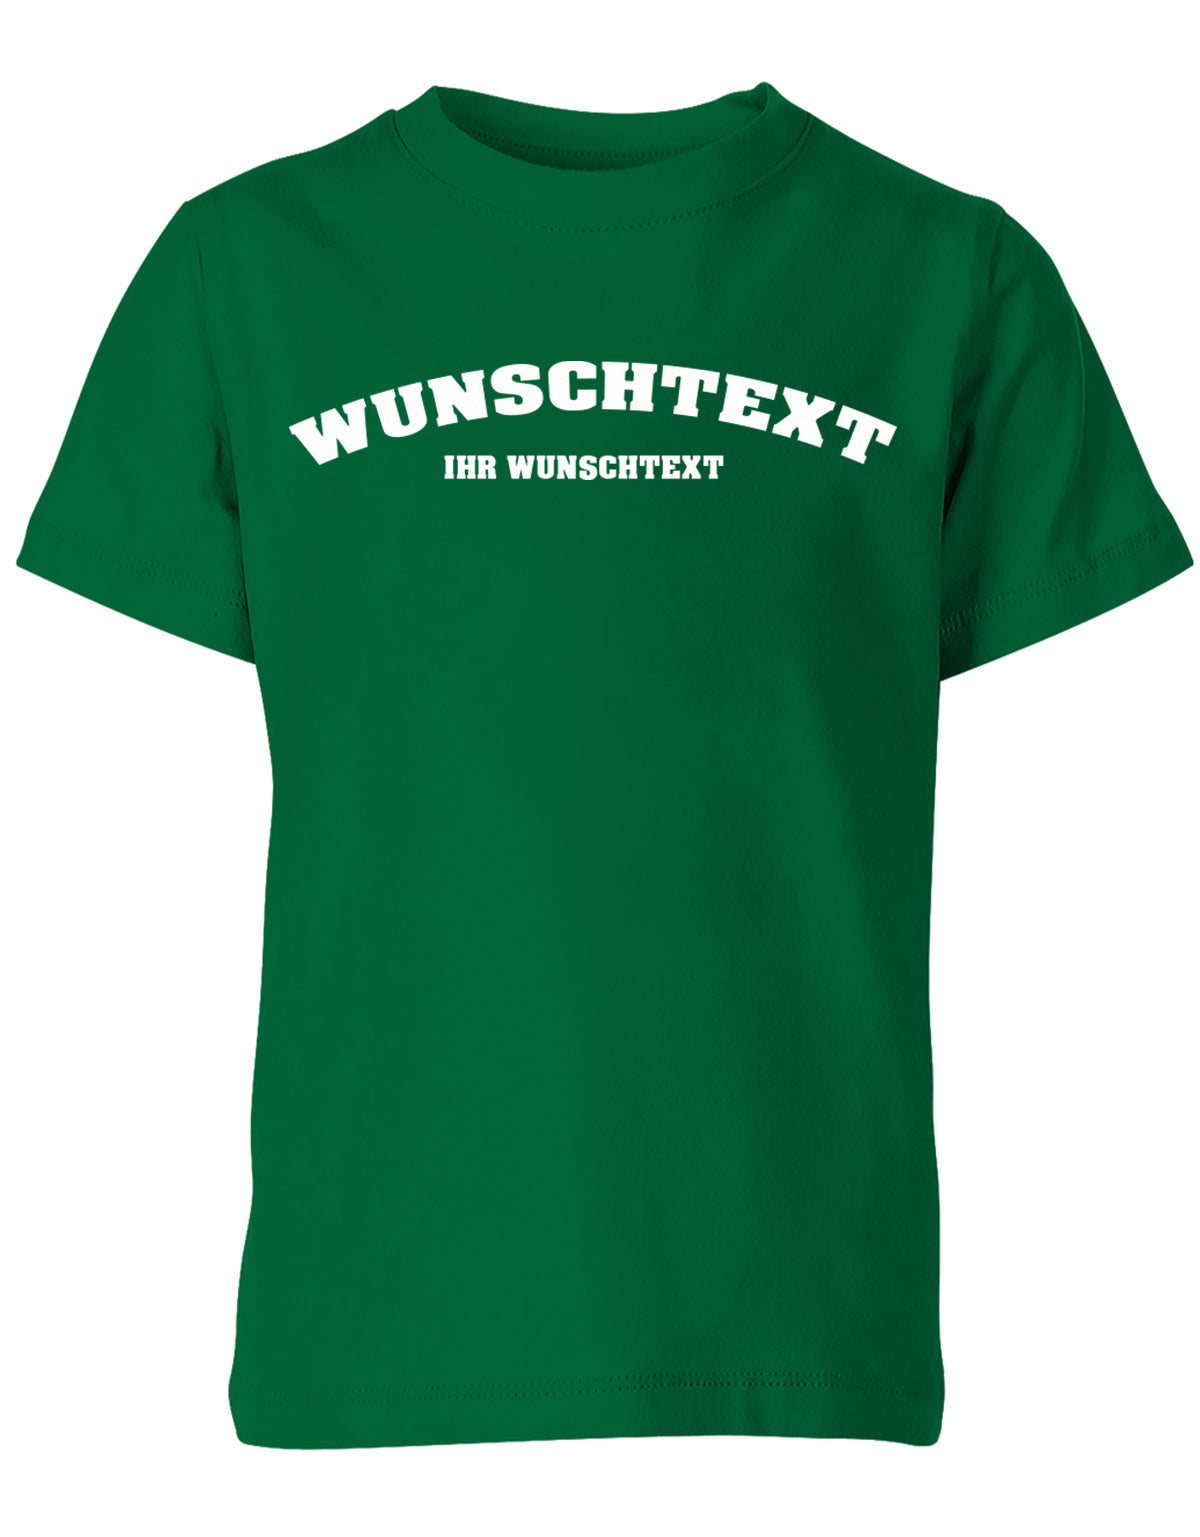 Kinder Tshirt mit Wunschtext.  Abgerundeter Text im Collage-Style. Grün